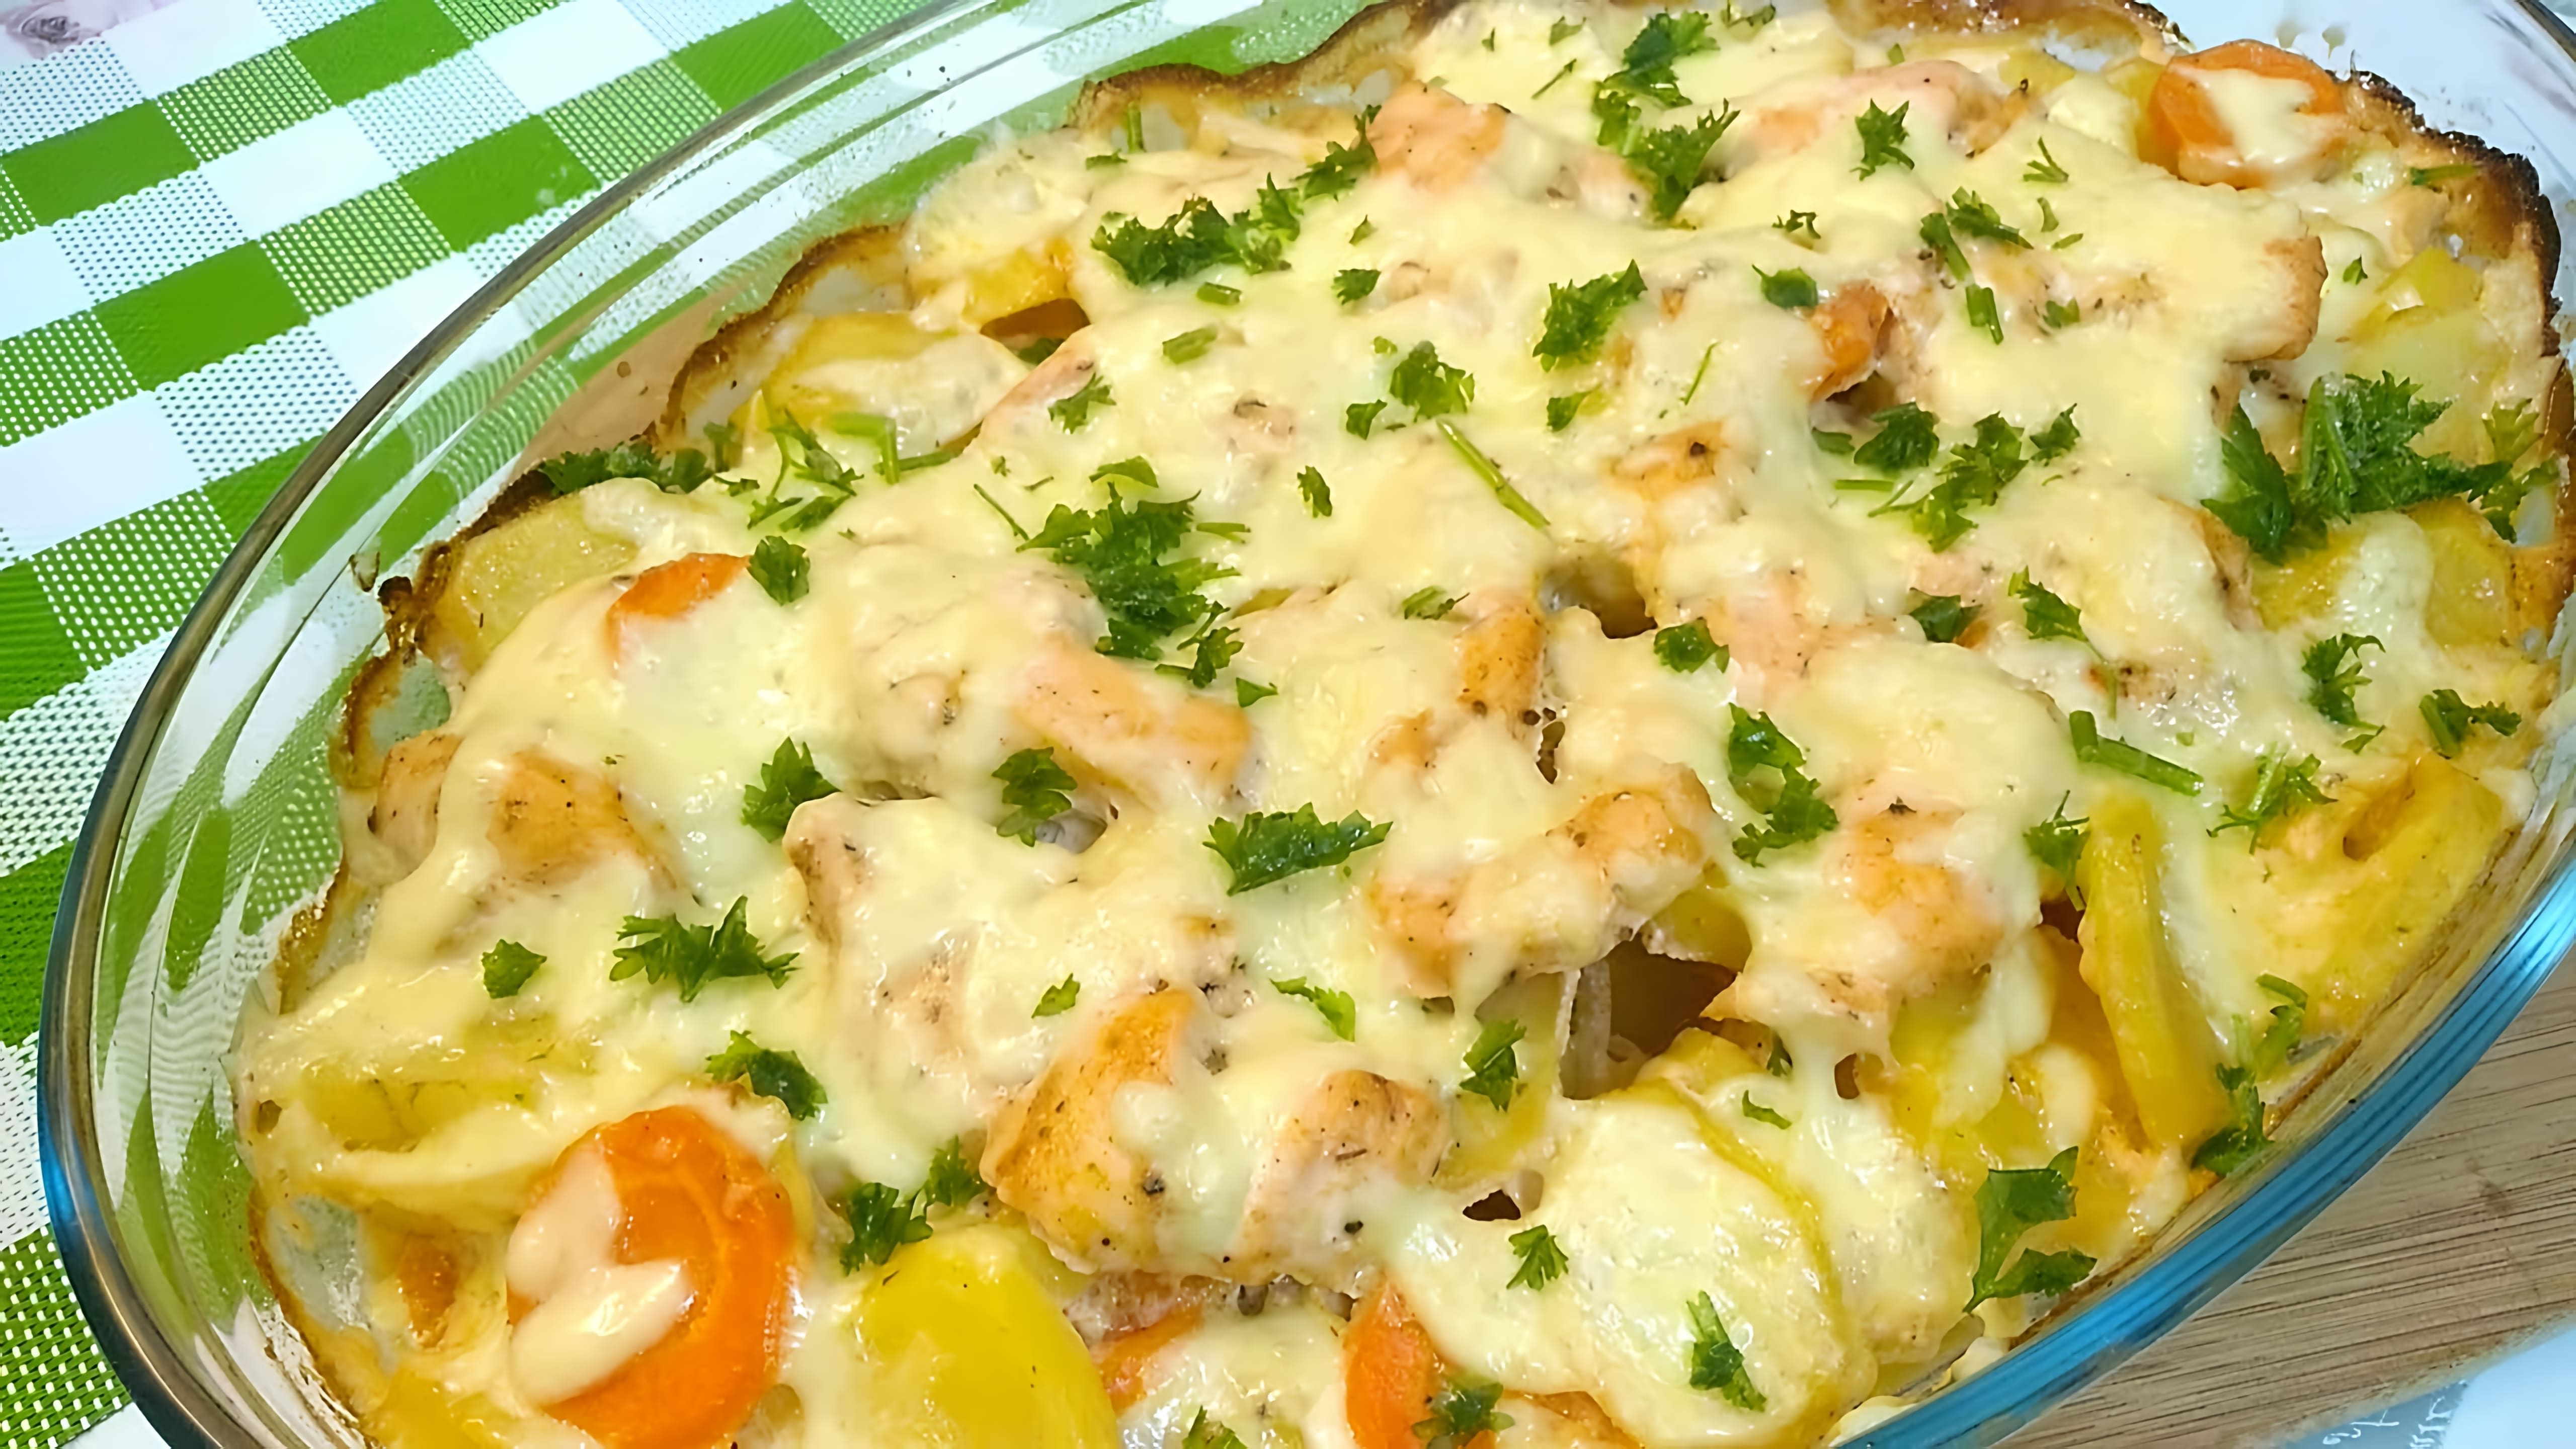 В этом видео демонстрируется рецепт приготовления куриного филе с картофелем в духовке